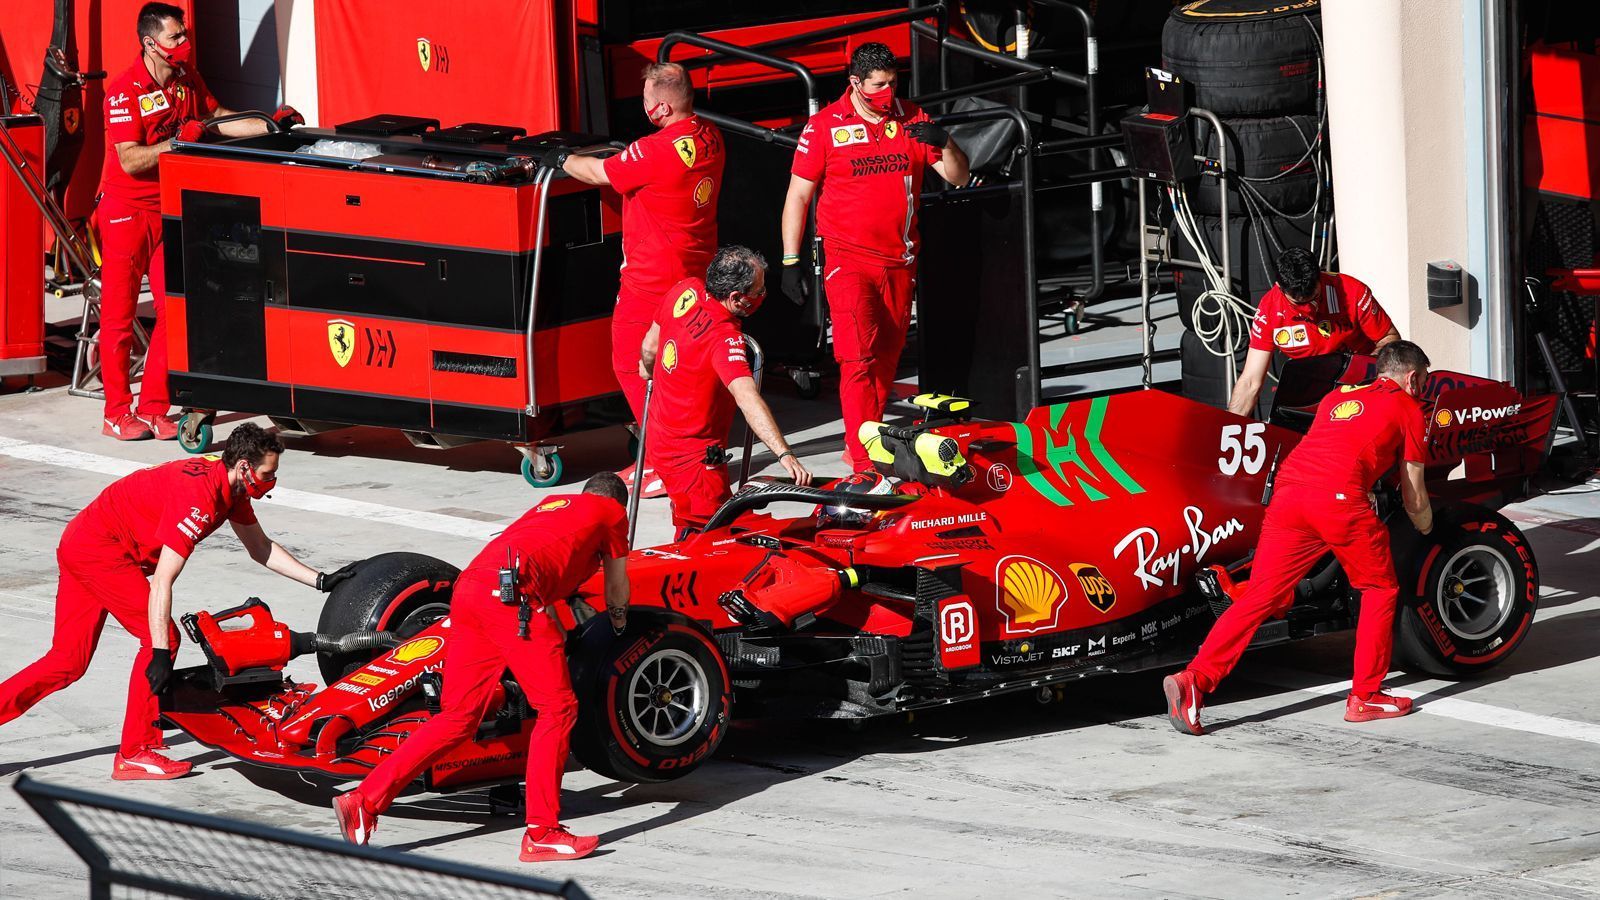 
                <strong>Verlierer: Ferrari - Mehr Top Speed, aber noch viel Arbeit</strong><br>
                Ferrari-Teamchef Mattia Binotto hat bei den Bahrain-Tests Fortschritte beim größten Sorgenkind 2020 gesehen: dem Motor. "Die Geschwindigkeit auf der Geraden ist in Ordnung. Sie scheint nicht mehr ein so großer Nachteil wie vergangenes Jahr zu sein", sagte Binotto in einer Presserunde. Klingt gut, doch der Weg zurück zu alter Stärke ist noch weit. Auch bei den schnellen Stints am dritten Testtag war Ferrari nicht wesentlich schneller als das Kundenteam Alfa Romeo. Trotz der kompletten Überarbeitung des Hecks vor dem Saisonstart besteht weiter viel Verbesserungsbedarf im Aerodynamik-Bereich. Immerhin: Laut Binotto gibt es durch die Tests dafür neue, nützliche Daten.
              